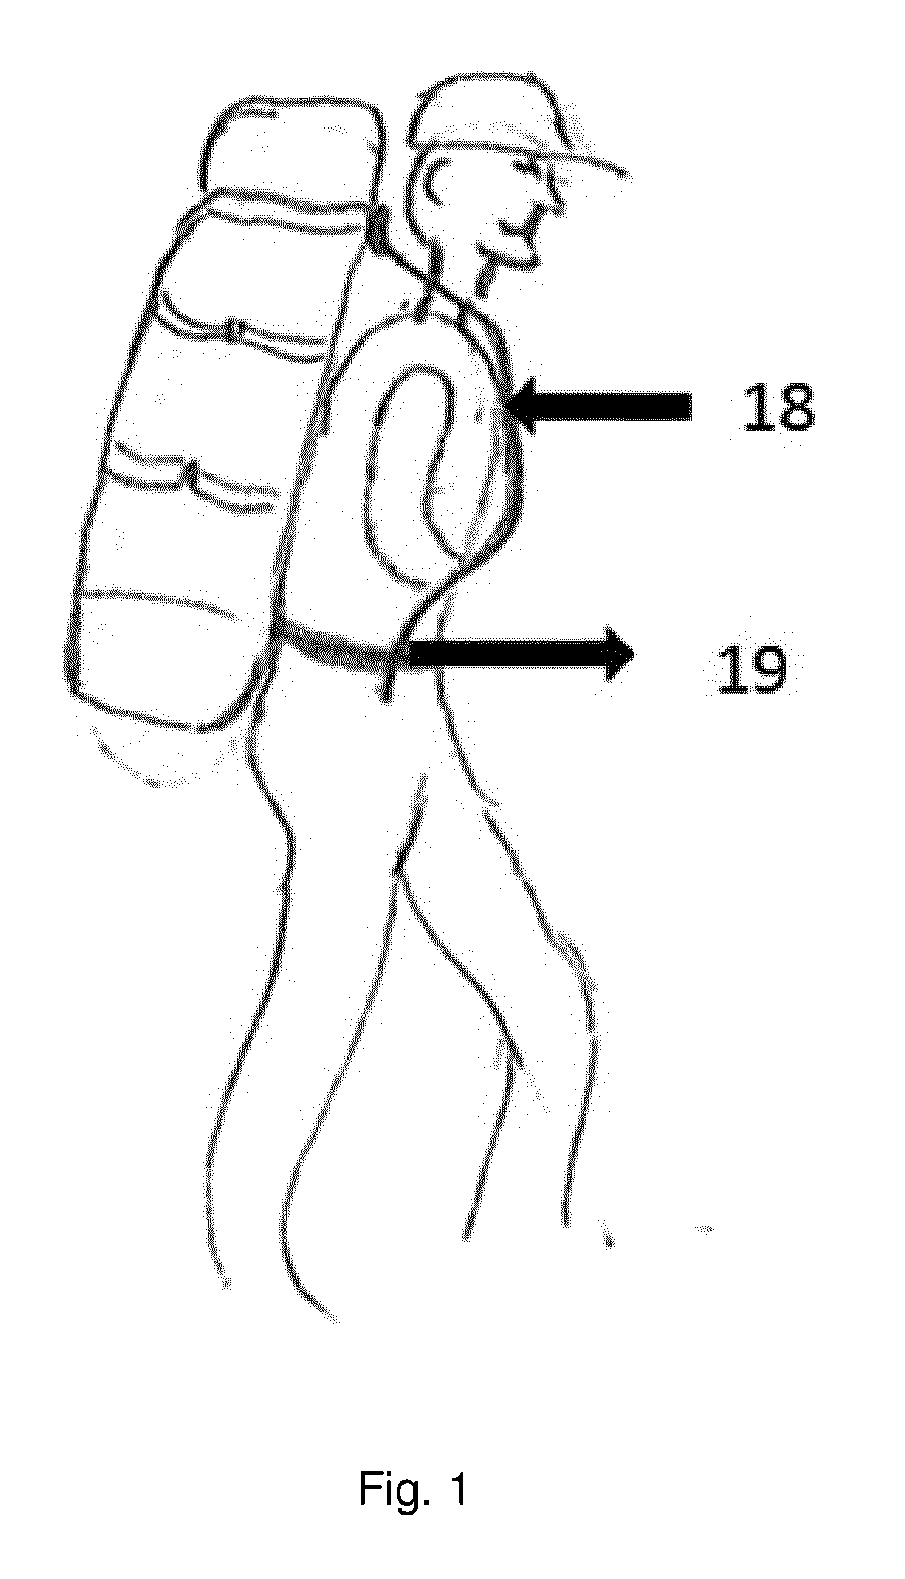 Carrier frame for a rucksack or equivalent